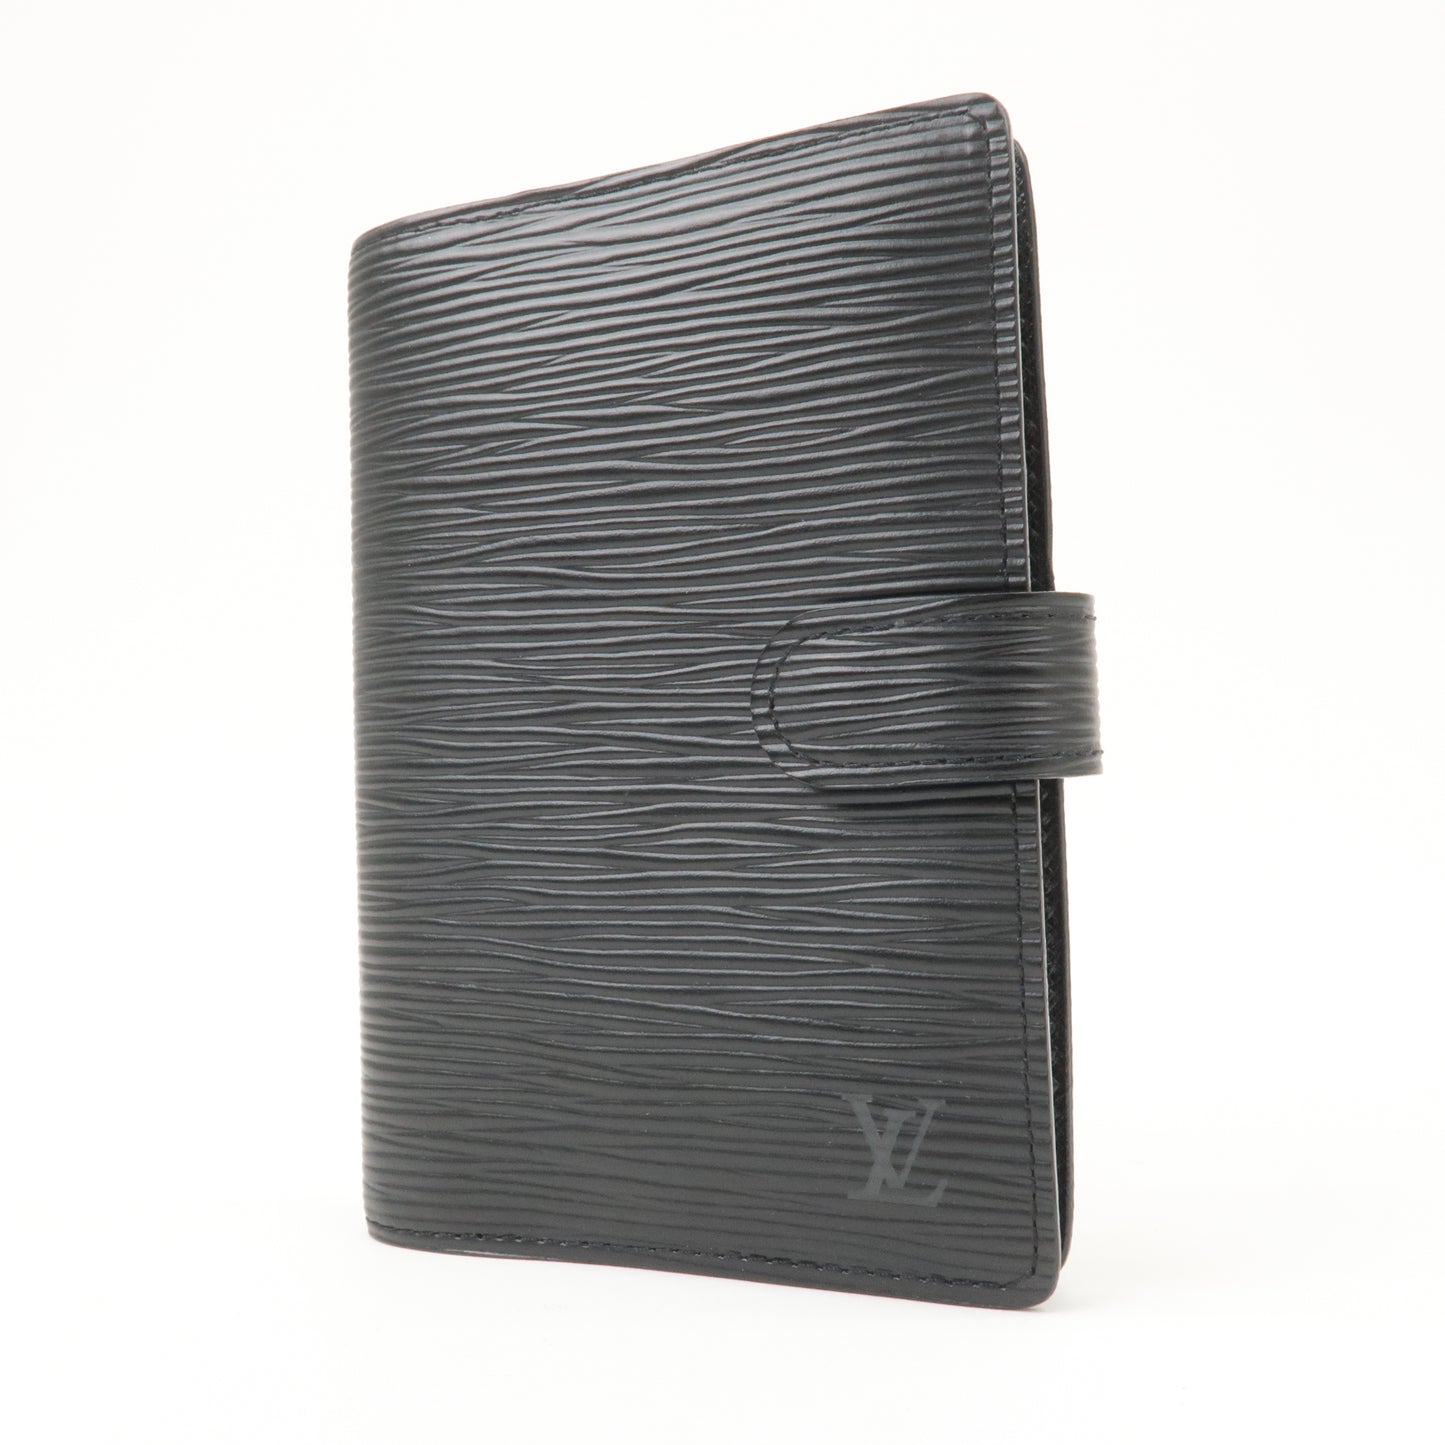 Best Authentic Vintage Louis Vuitton Agenda Pm Planner/ Wallet Epi